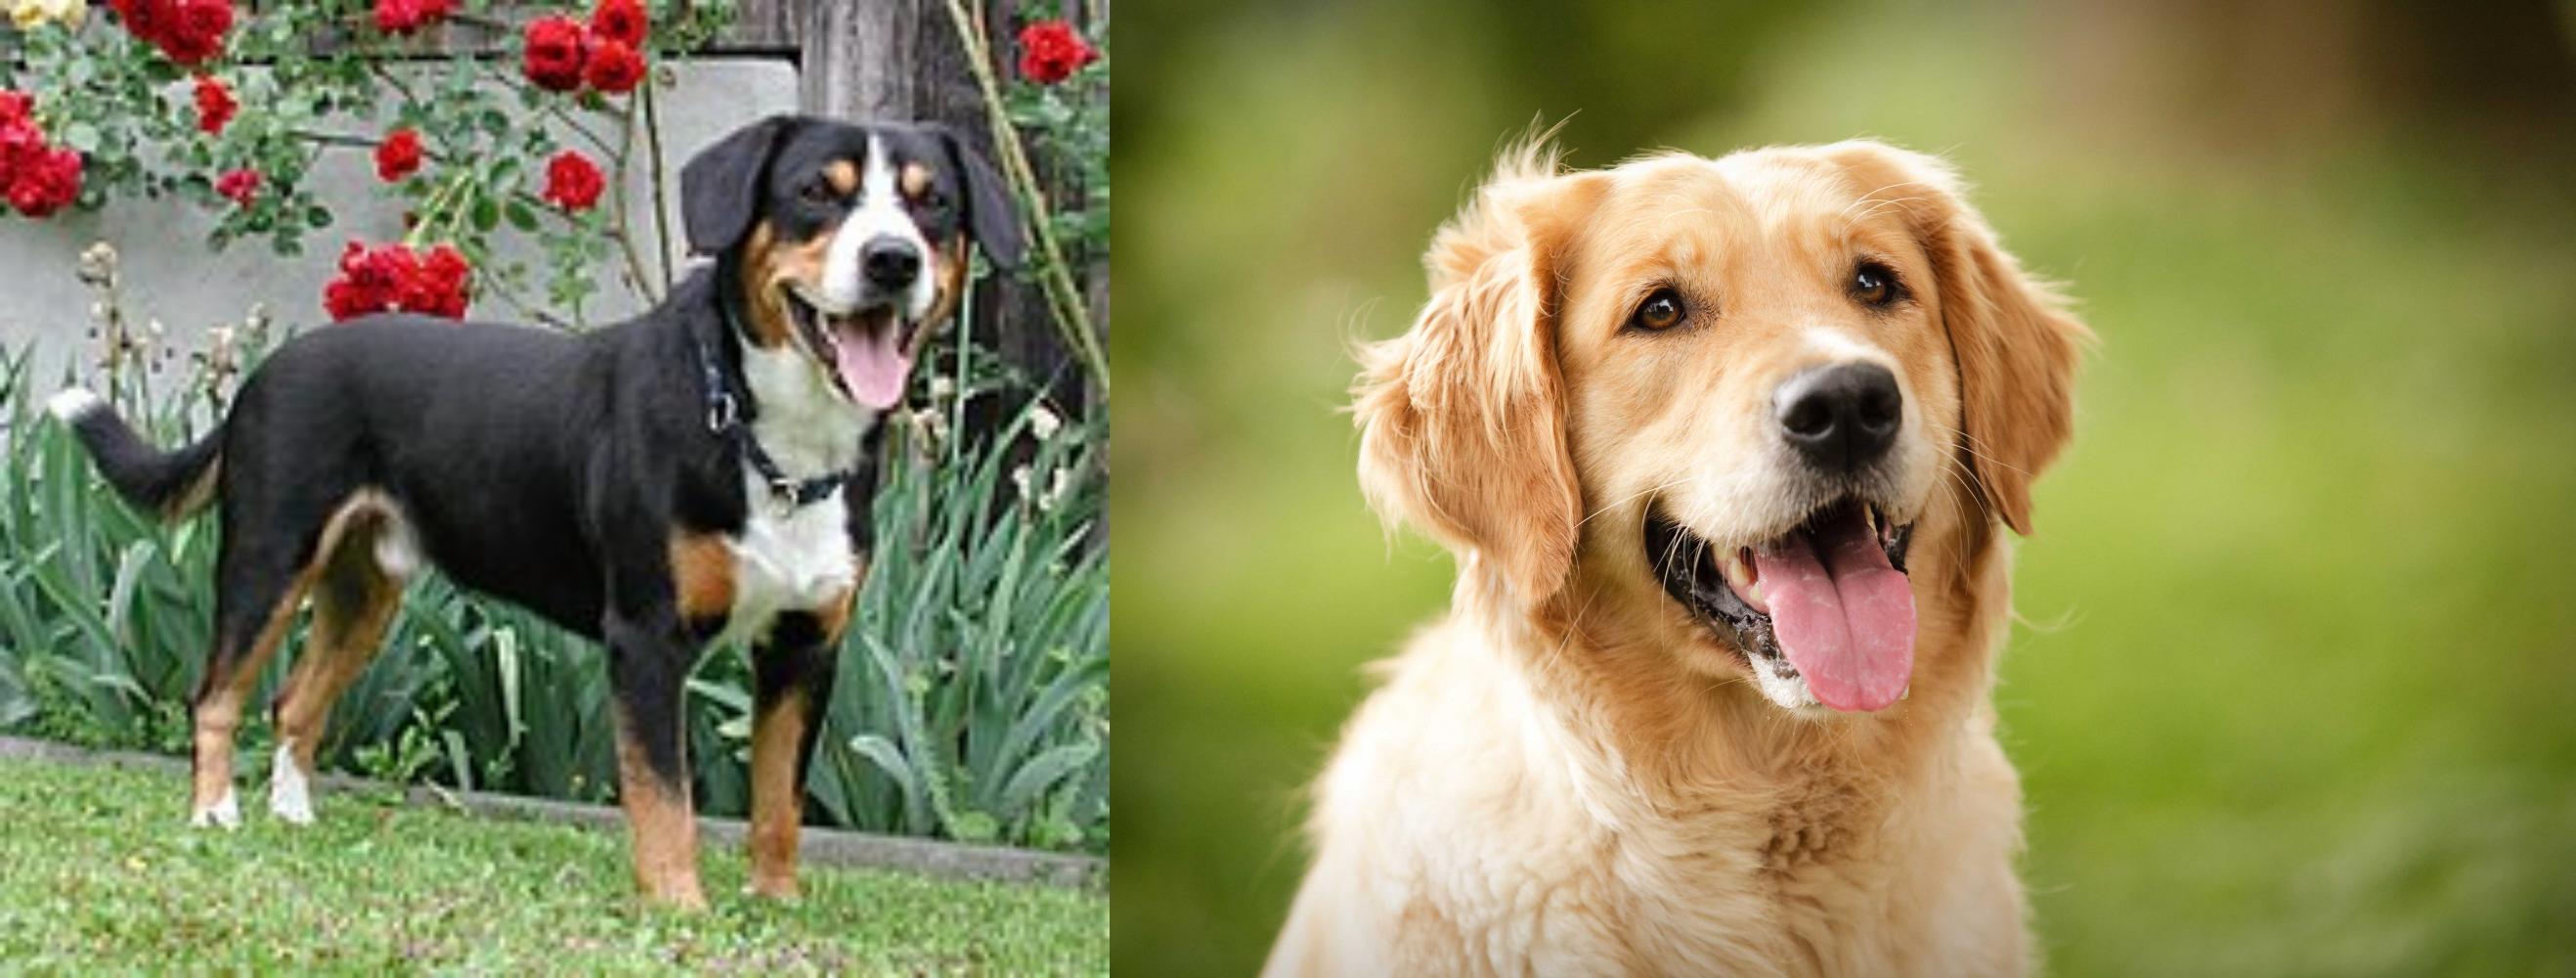 Entlebucher Mountain Dog Vs Golden Retriever Breed Comparison